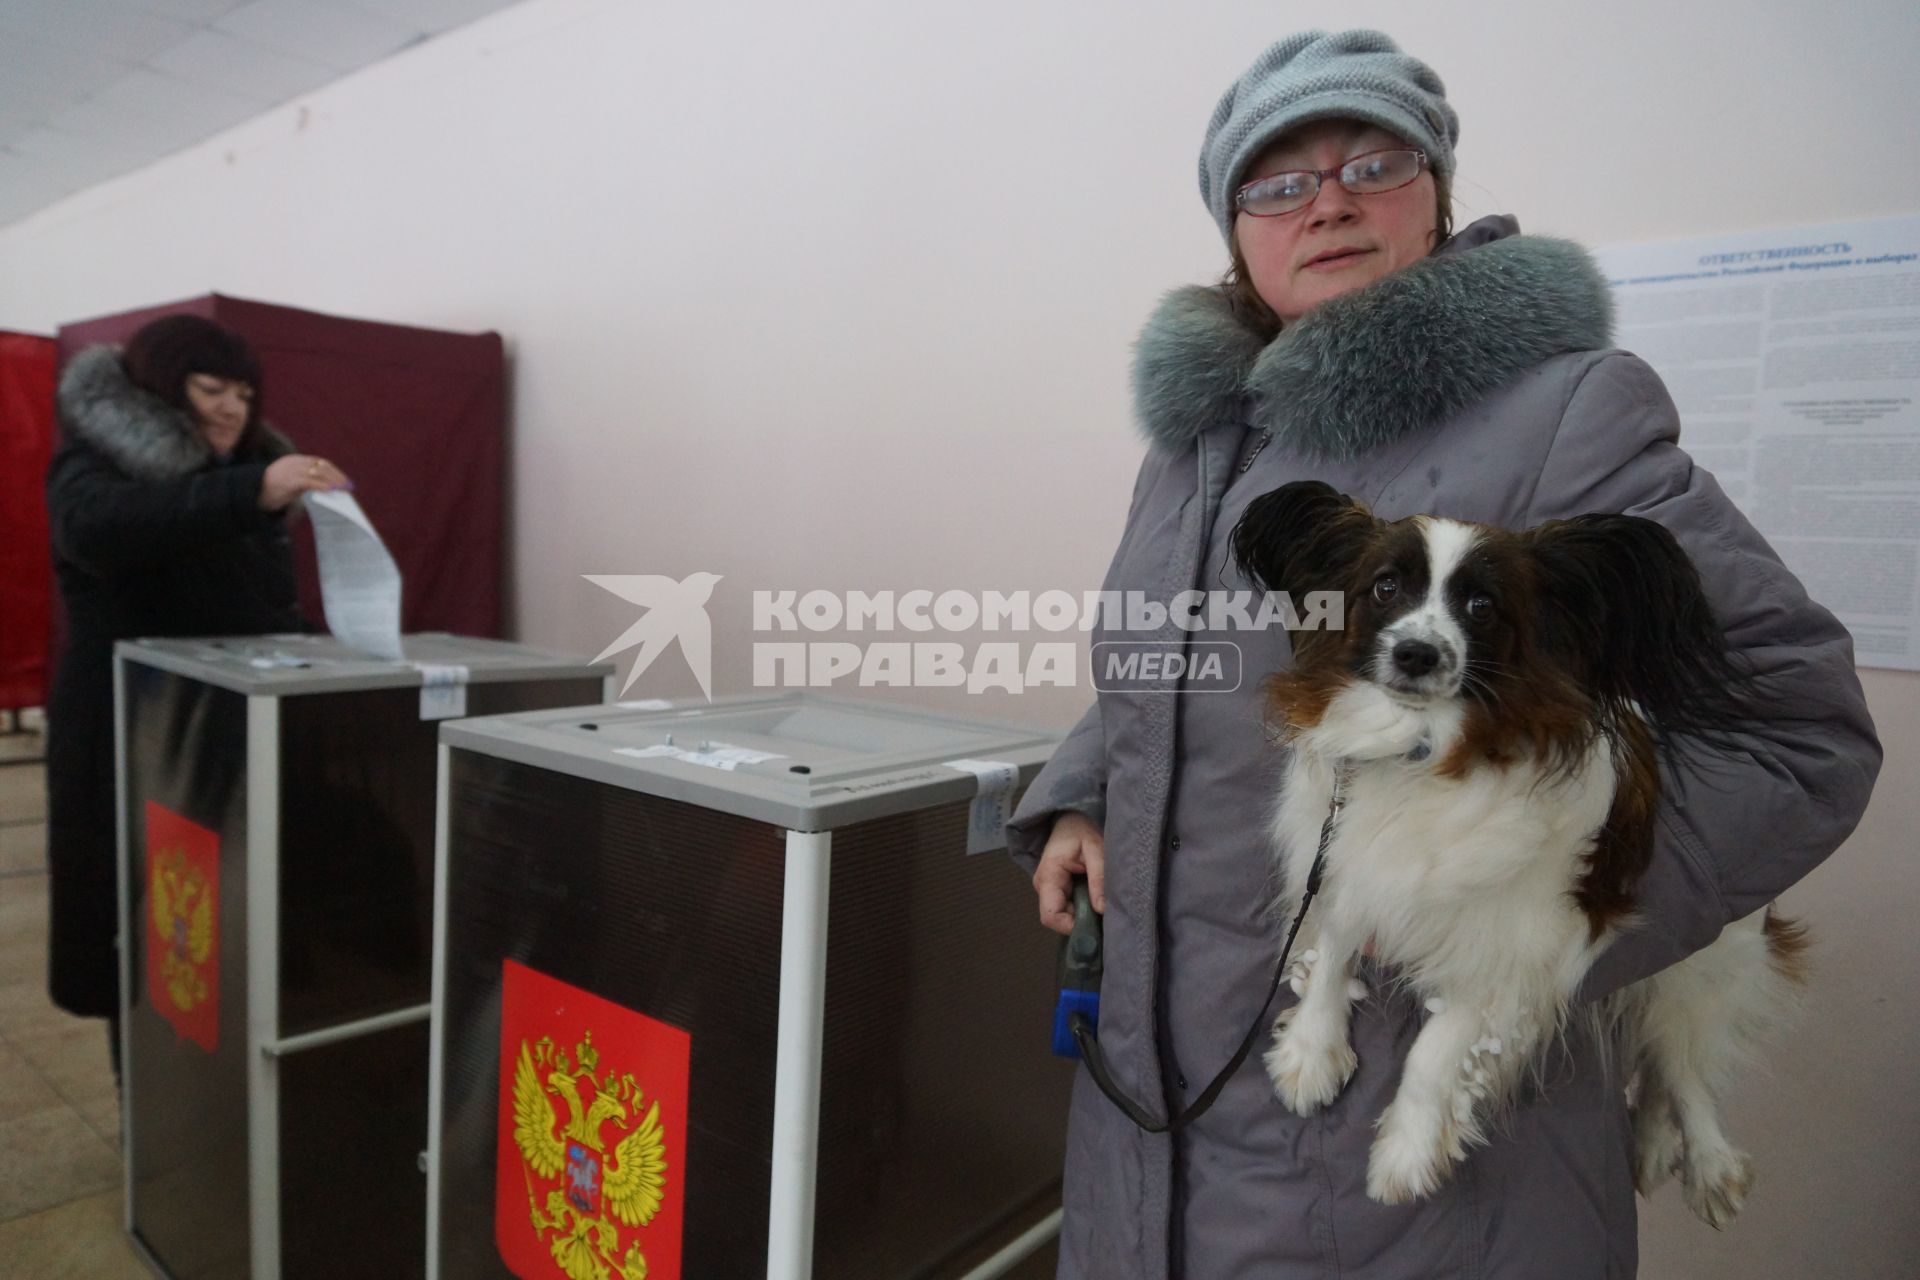 Самара. Женщины во время голосования на выборах президента РФ на избирательном участке #3011.